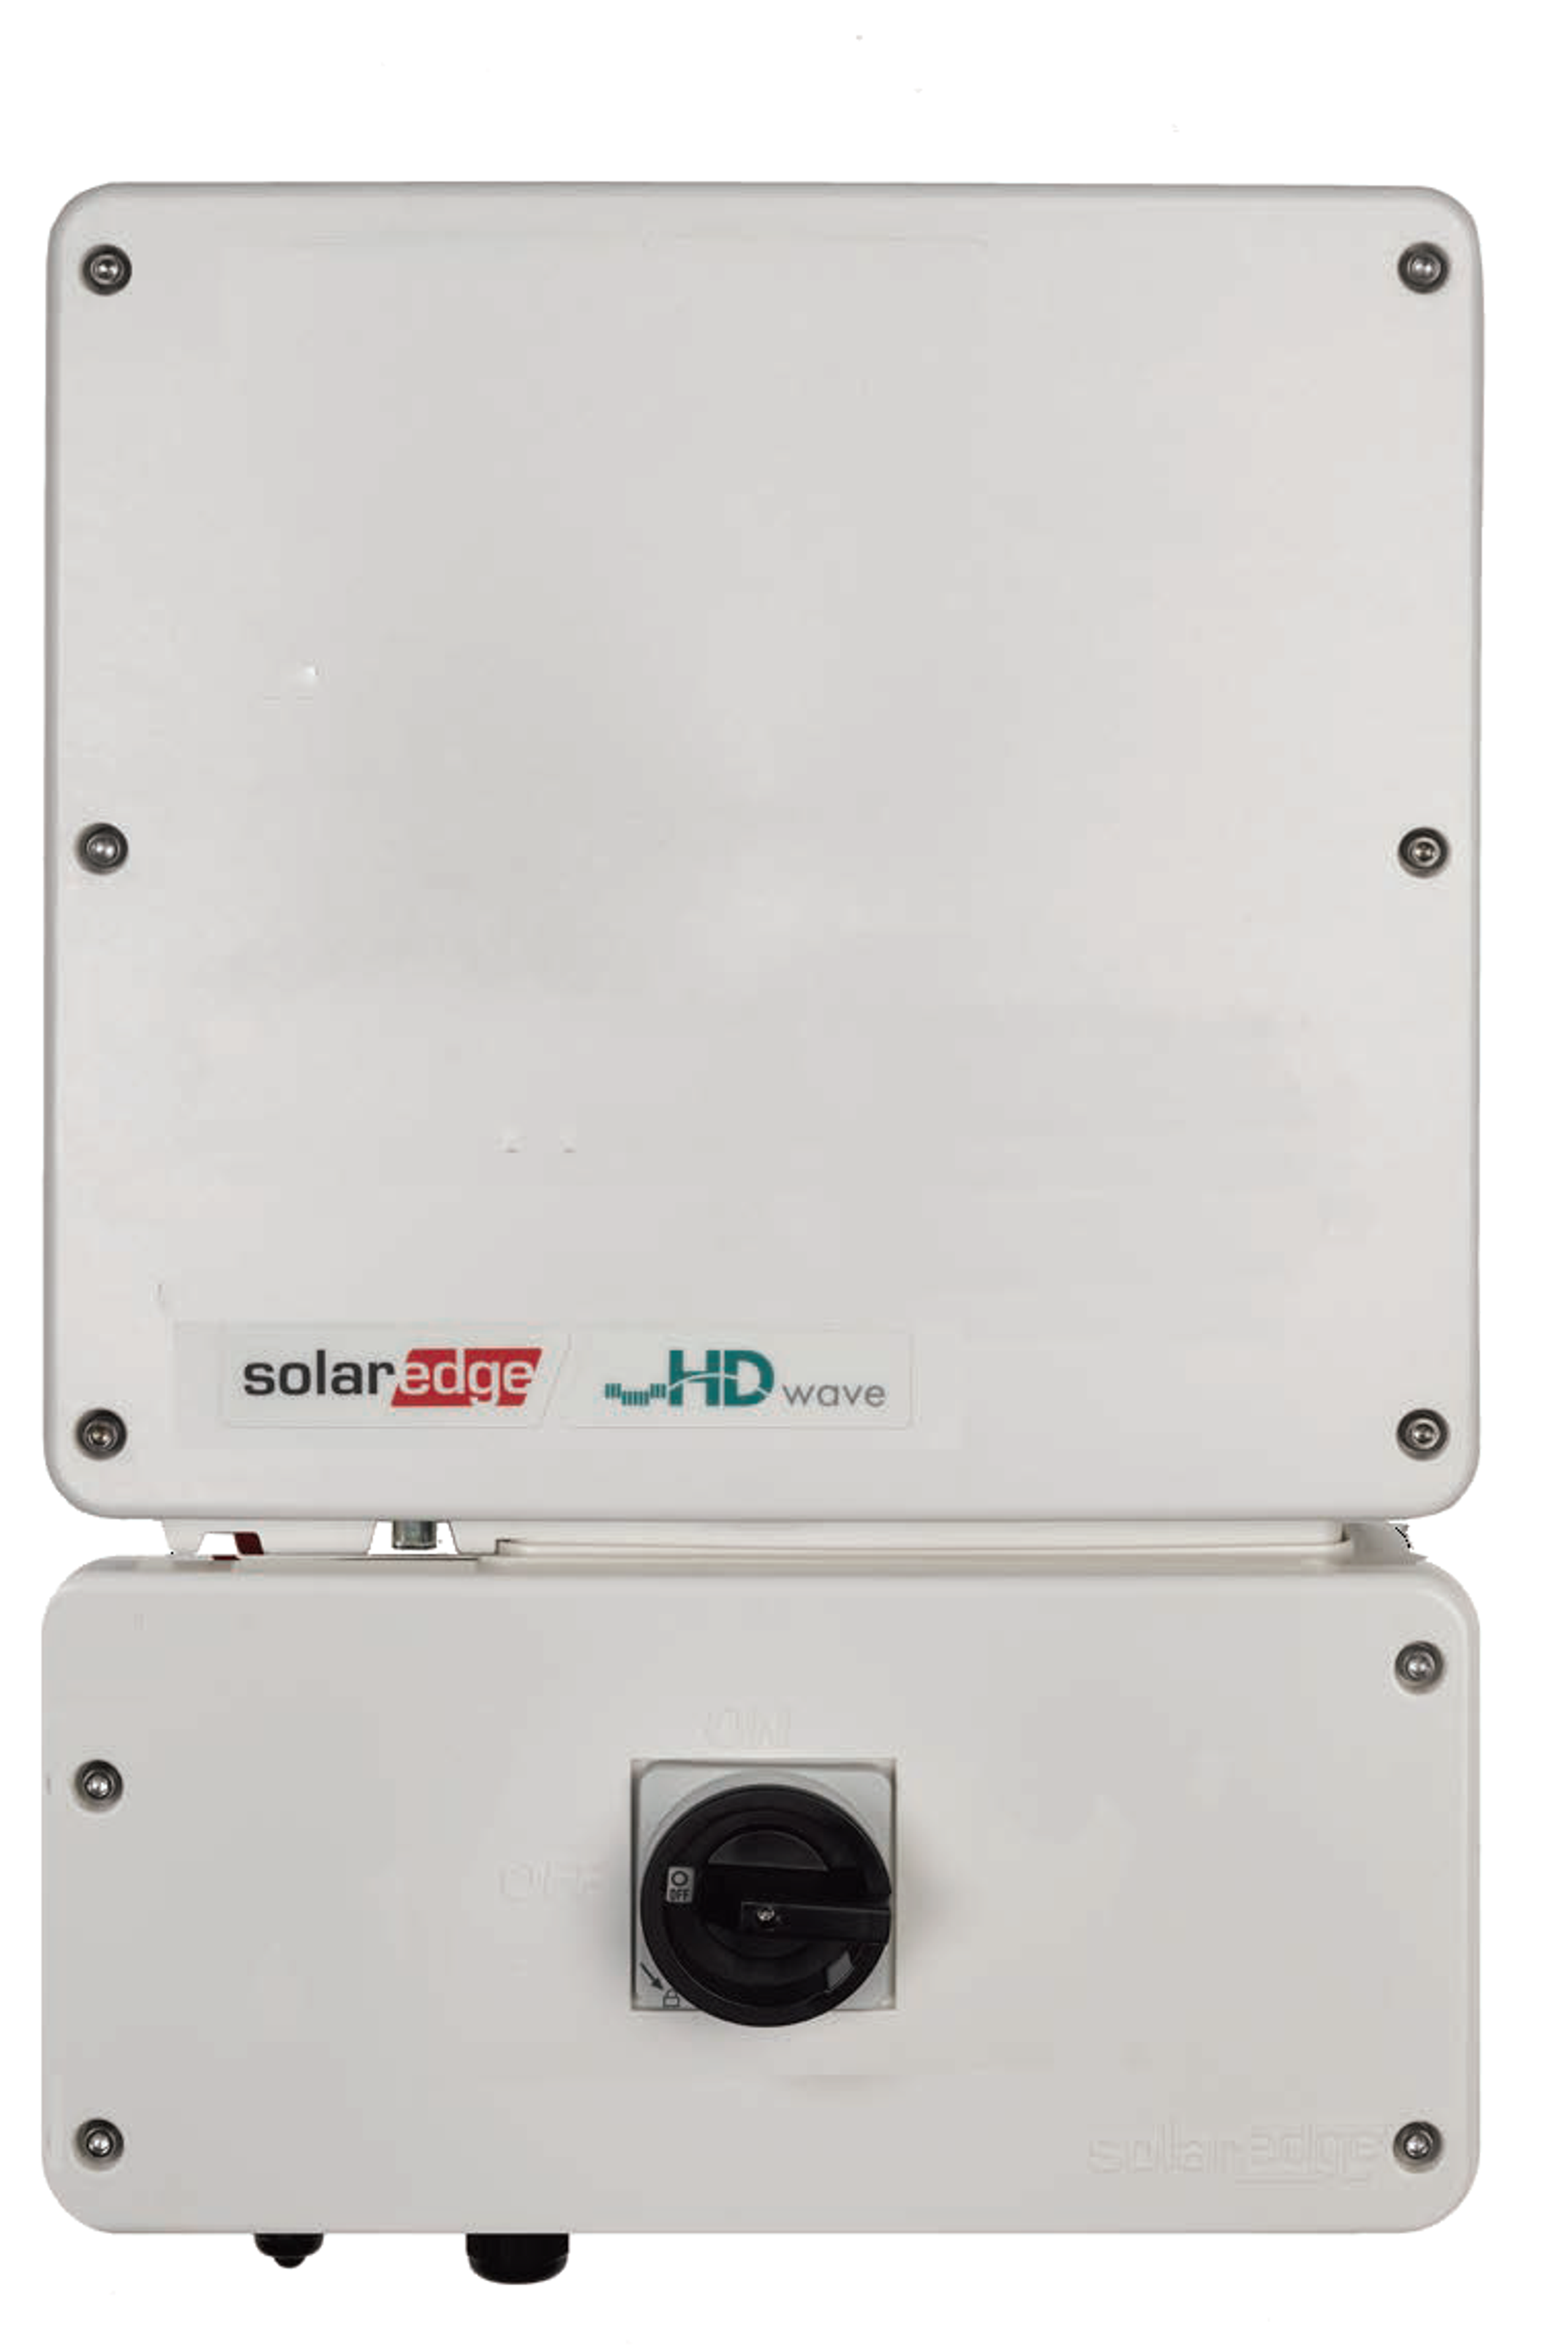 SolarEdge SE11400H-US HD-Wave Inverter | SolarTown.com